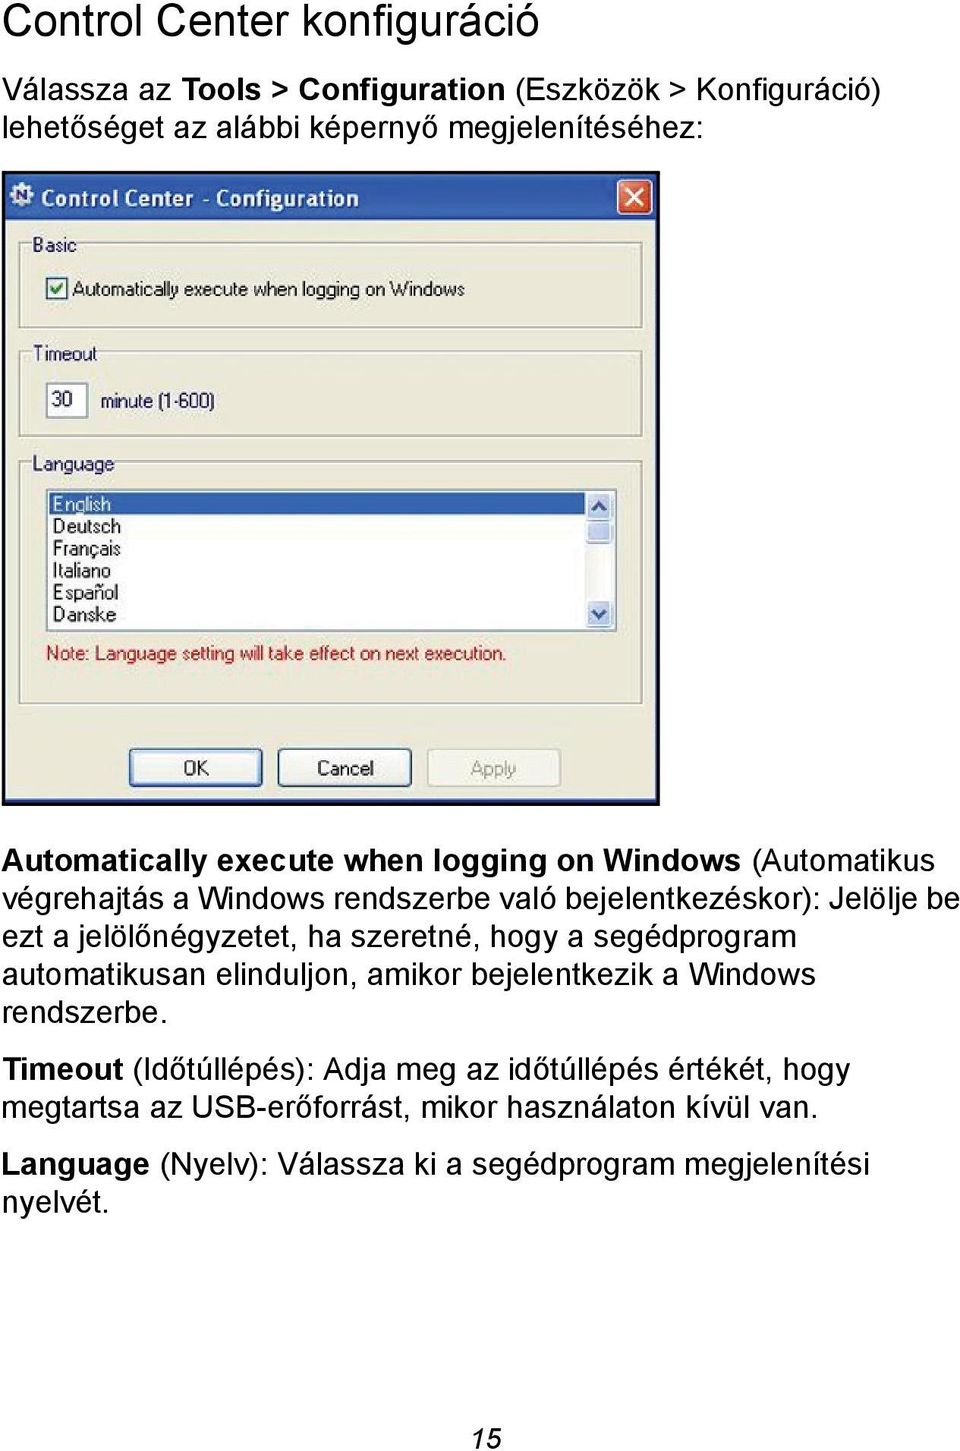 jelölőnégyzetet, ha szeretné, hogy a segédprogram automatikusan elinduljon, amikor bejelentkezik a Windows rendszerbe.